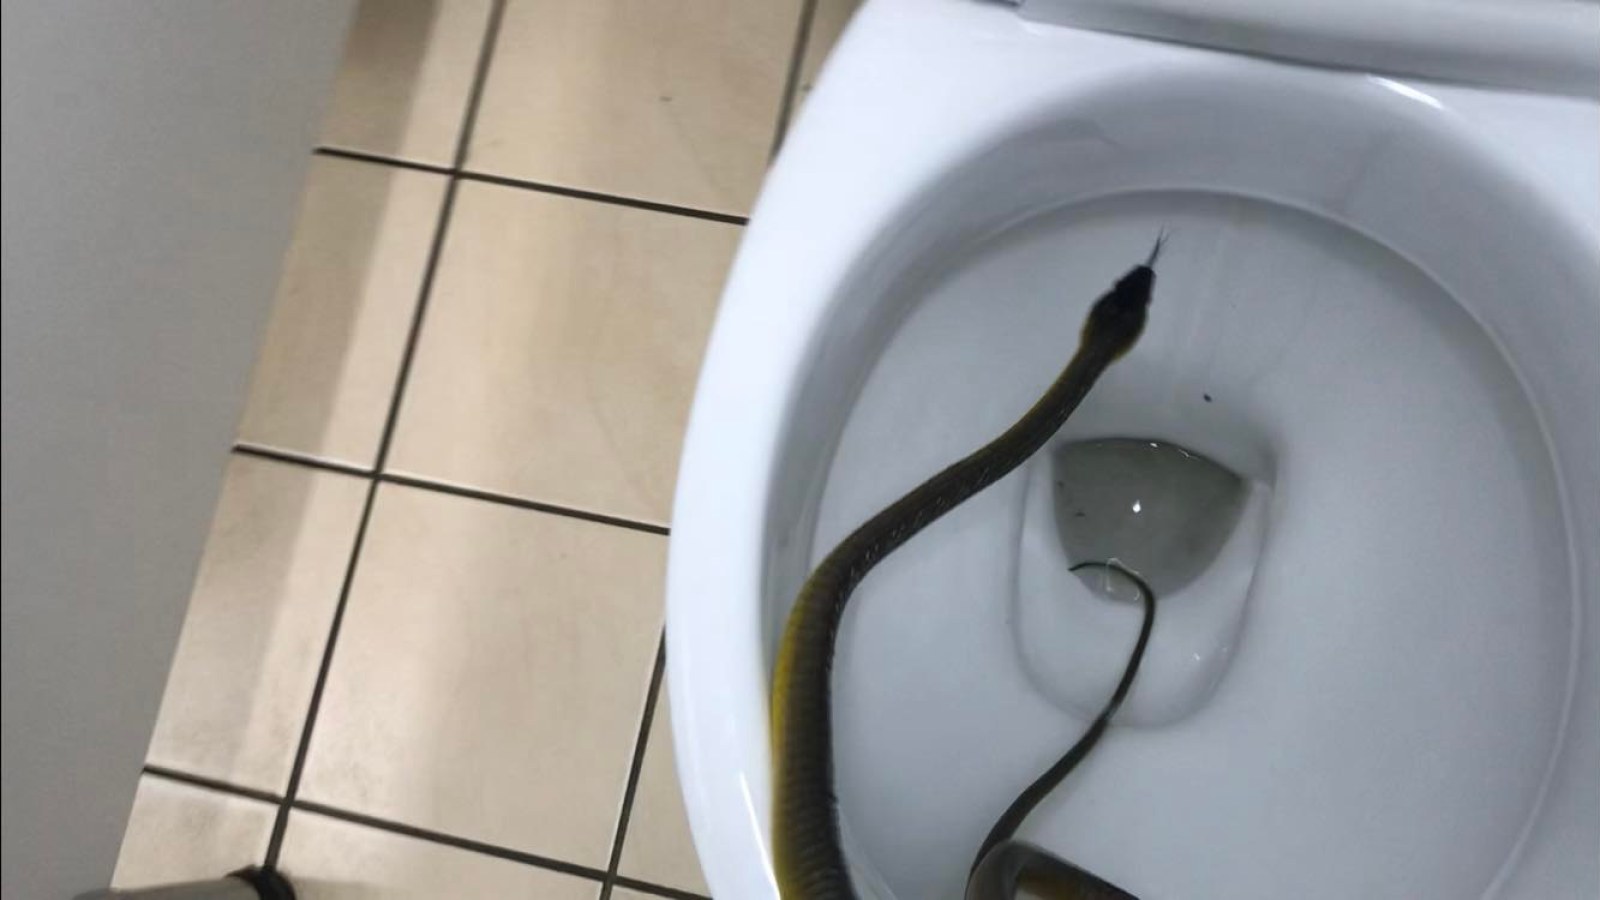 https://d.newsweek.com/en/full/2014720/snake-toilet.jpg?w=1600&h=900&q=88&f=59325b5bcd507042b21805e1ca33e8db